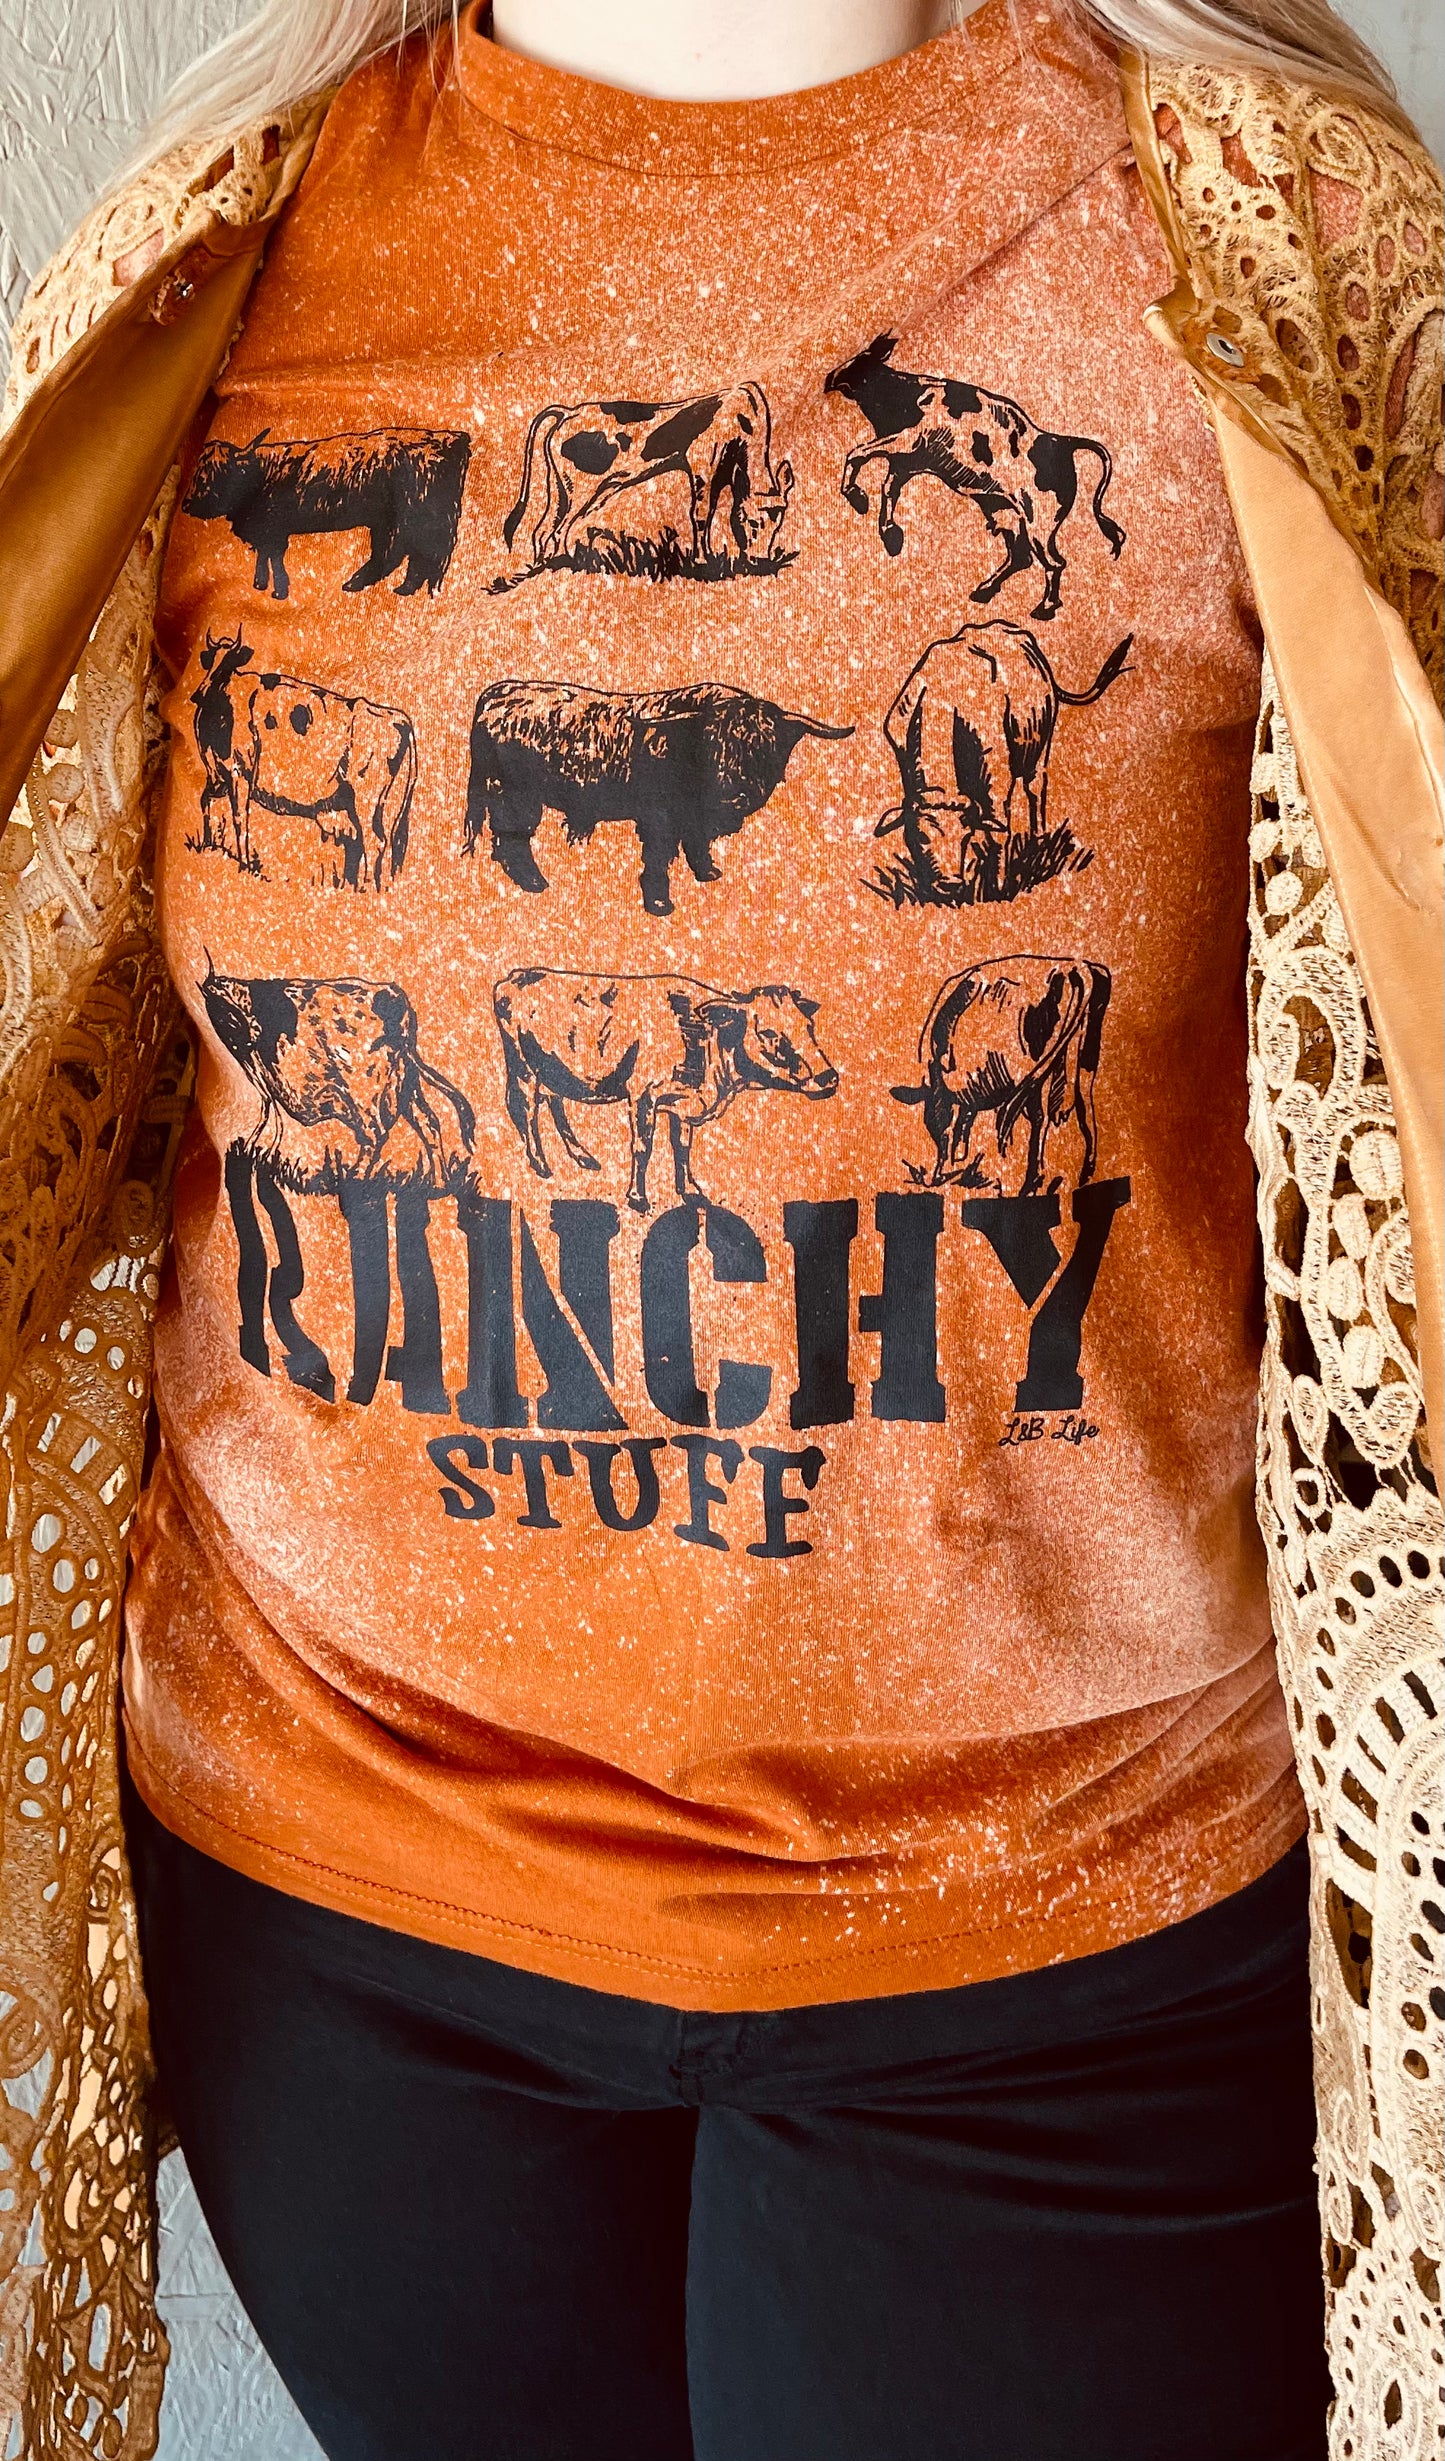 Ranchy Stuff Tee